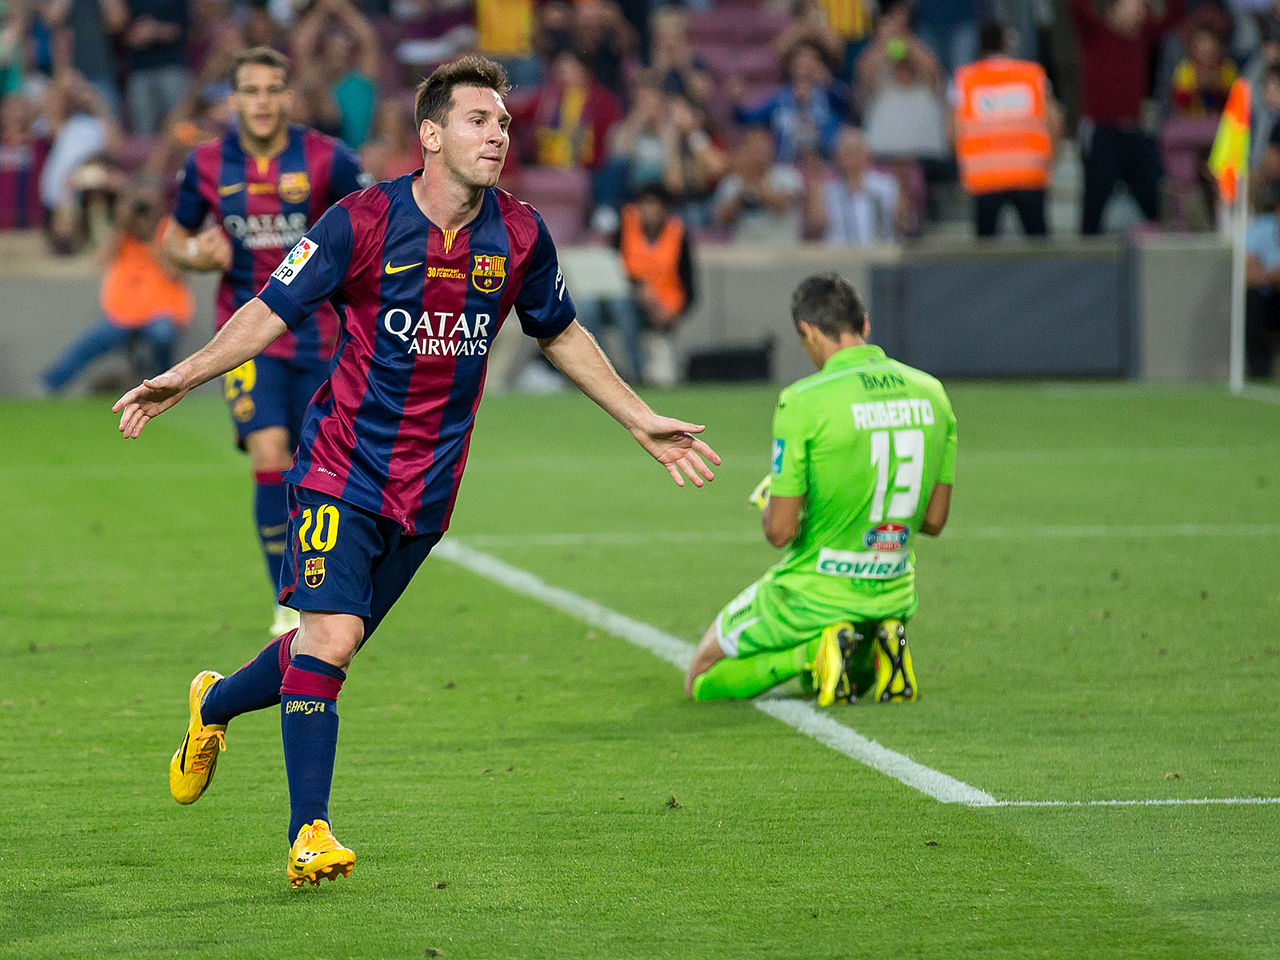 Lionel Messi celebrating scoring a goal against Granada CF in October 2014. Author: L. F. Salas